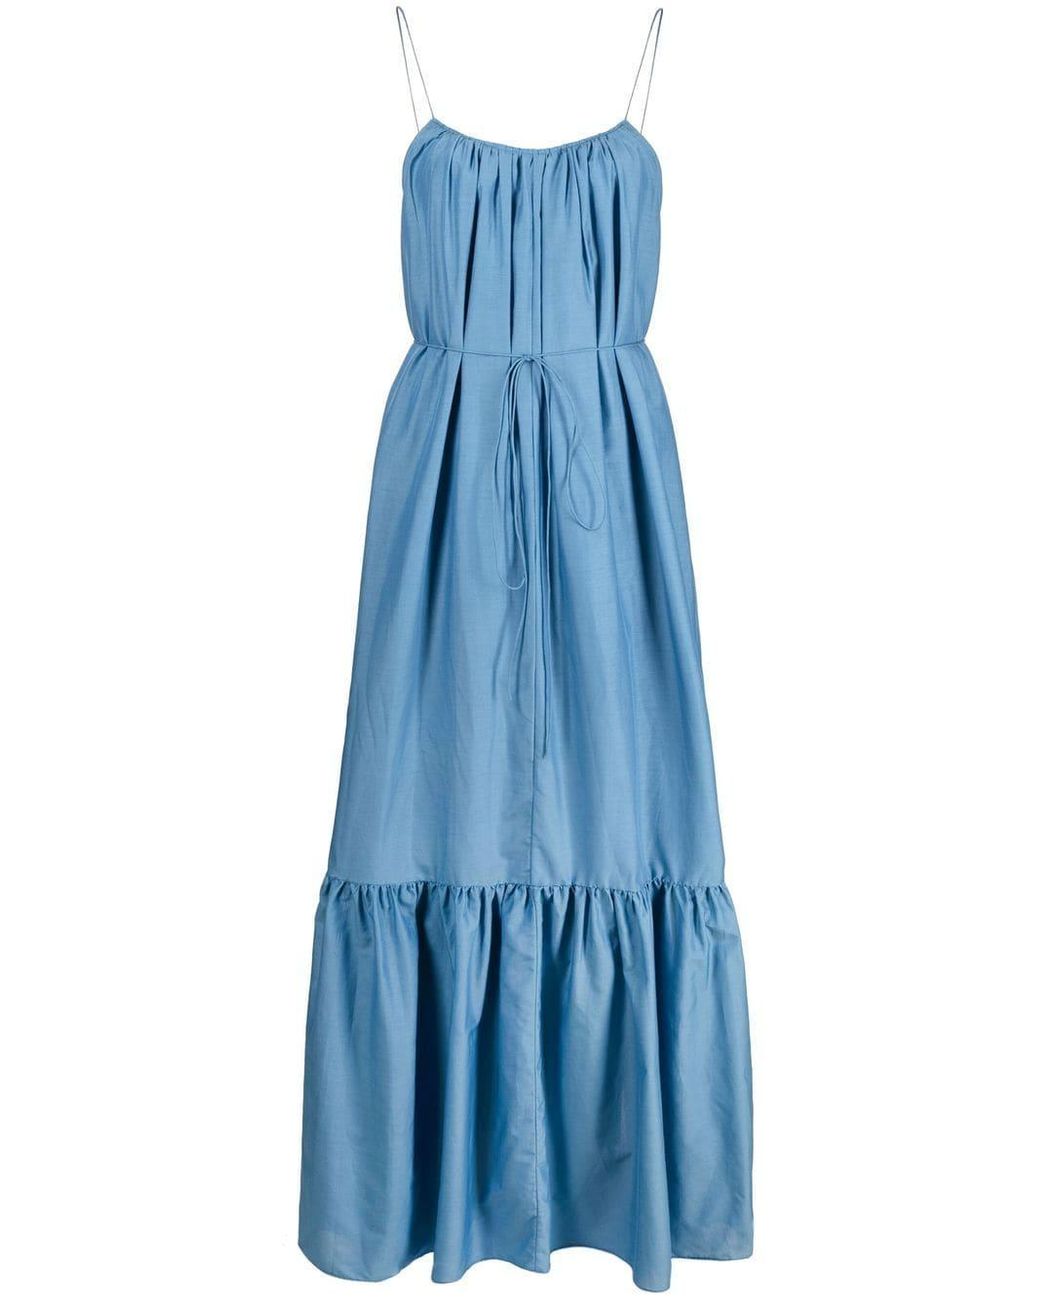 Matteau Cotton The Single Tier Sun Dress in Blue | Lyst